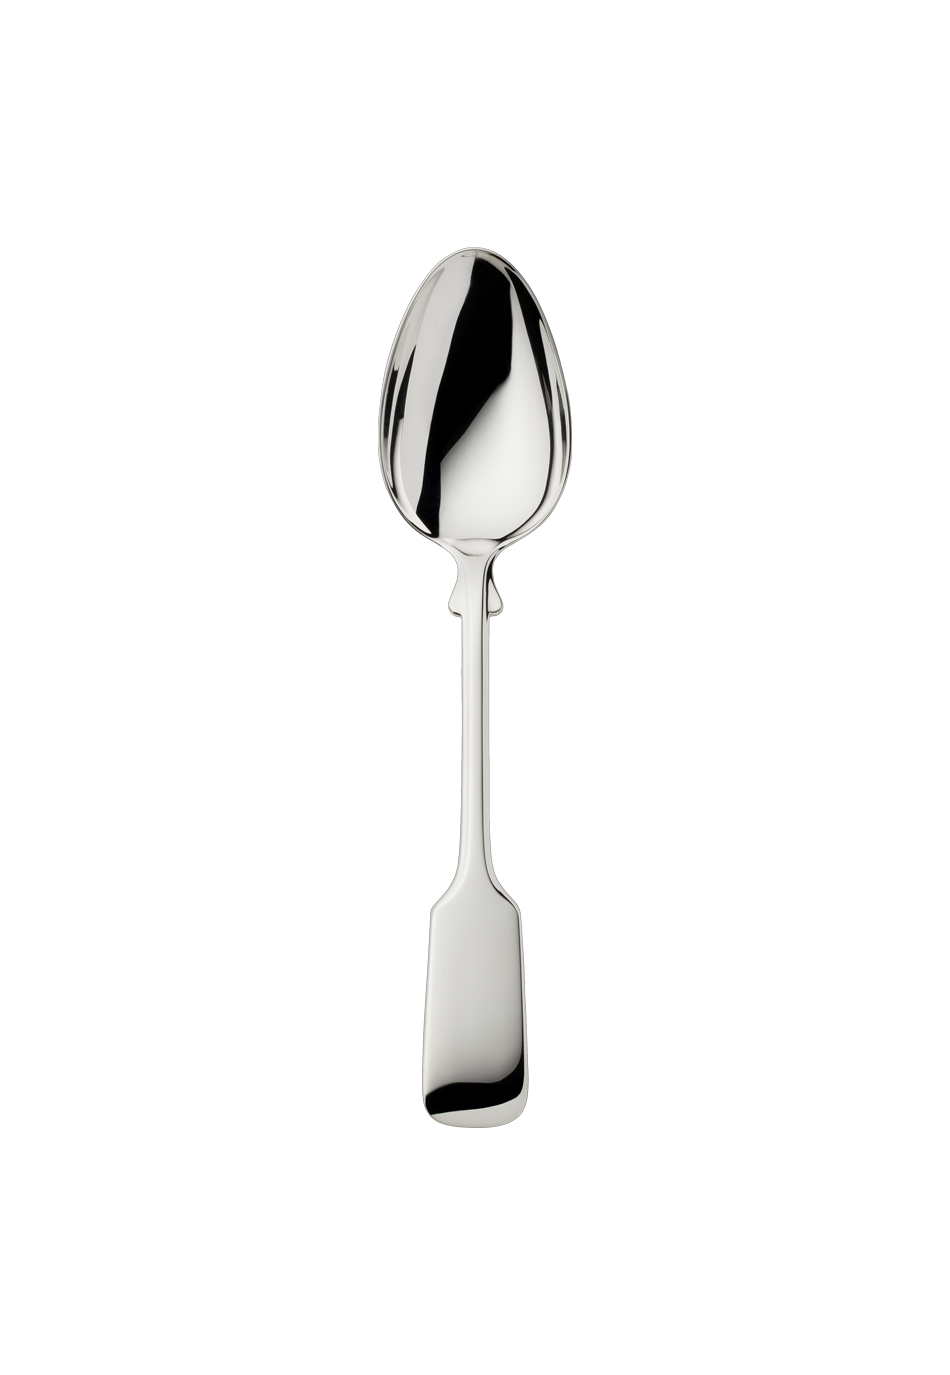 Alt-Spaten Dessert Spoon (150g massive silverplated)